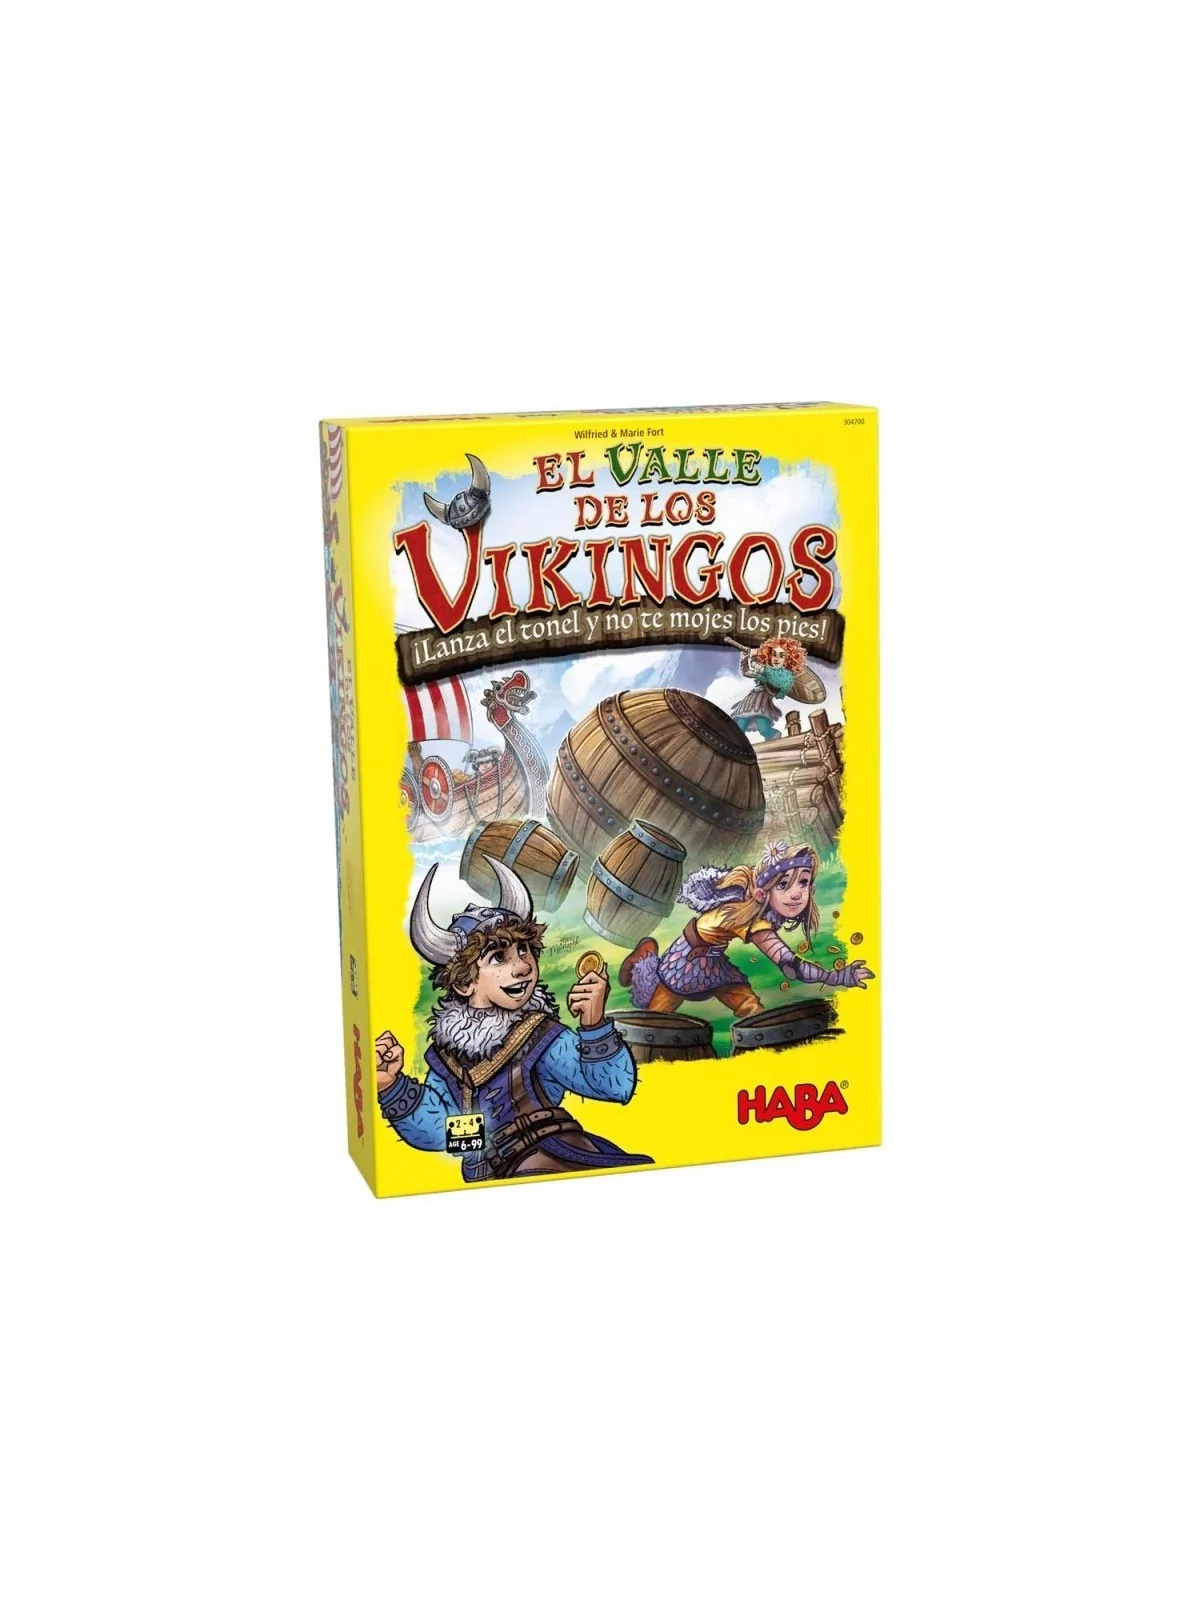 Comprar El Valle de los Vikingos barato al mejor precio 24,99 € de Hab